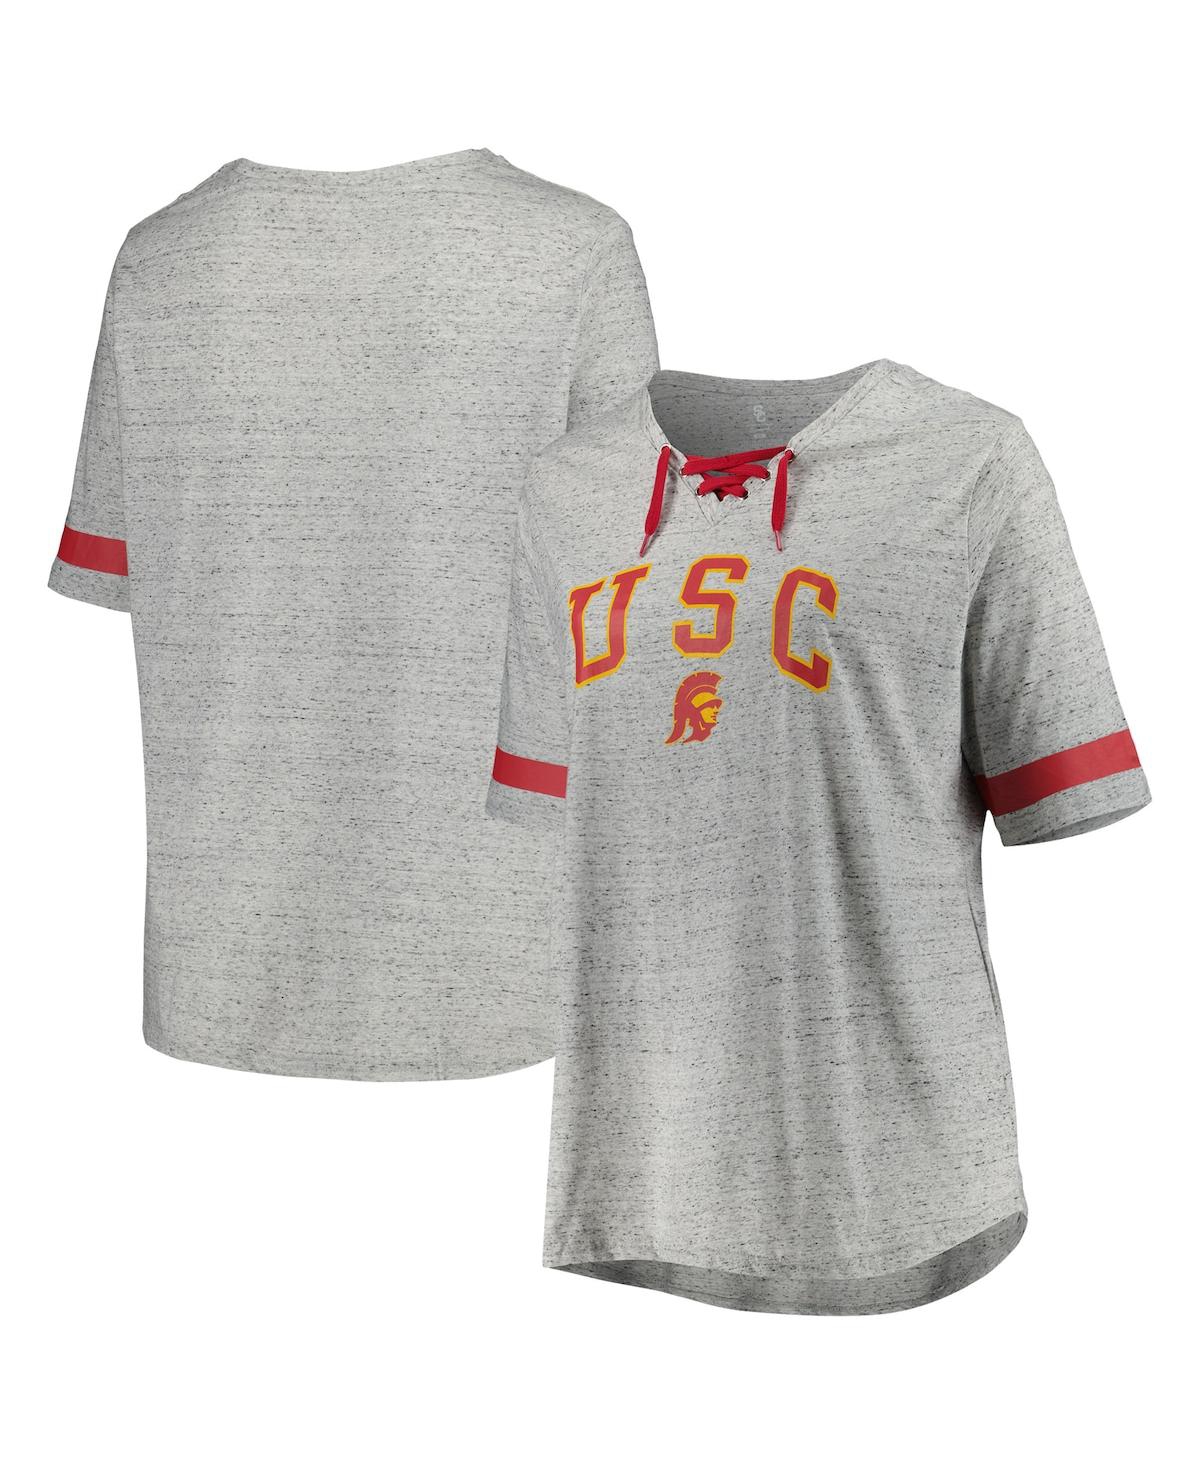 Women's Heather Gray USC Trojans Plus Size Lace-Up T-Shirt